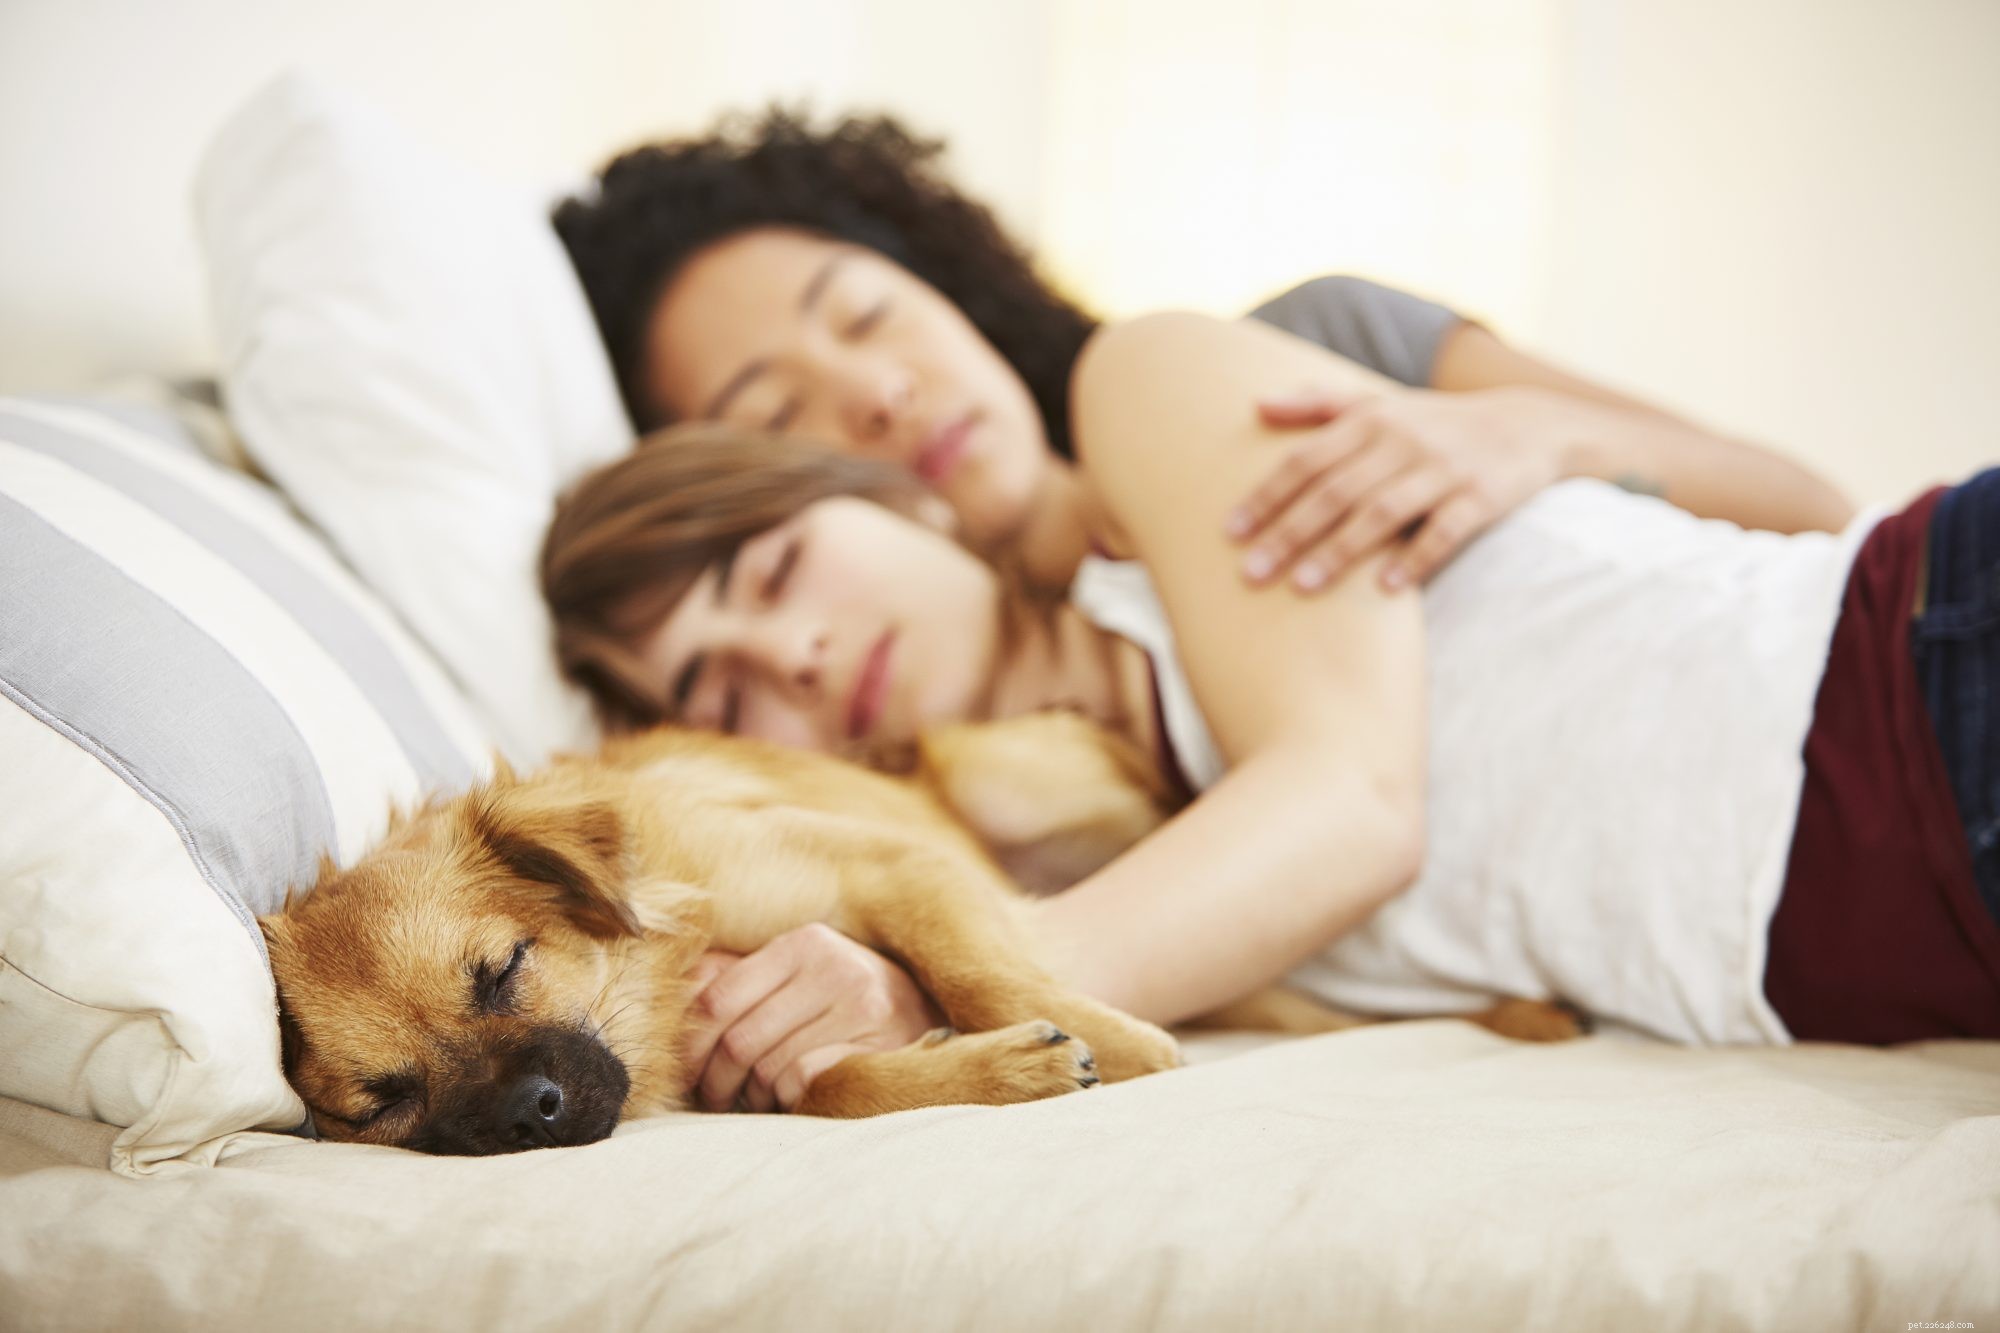 Zowel u als uw huisdier profiteren van samen in bed slapen